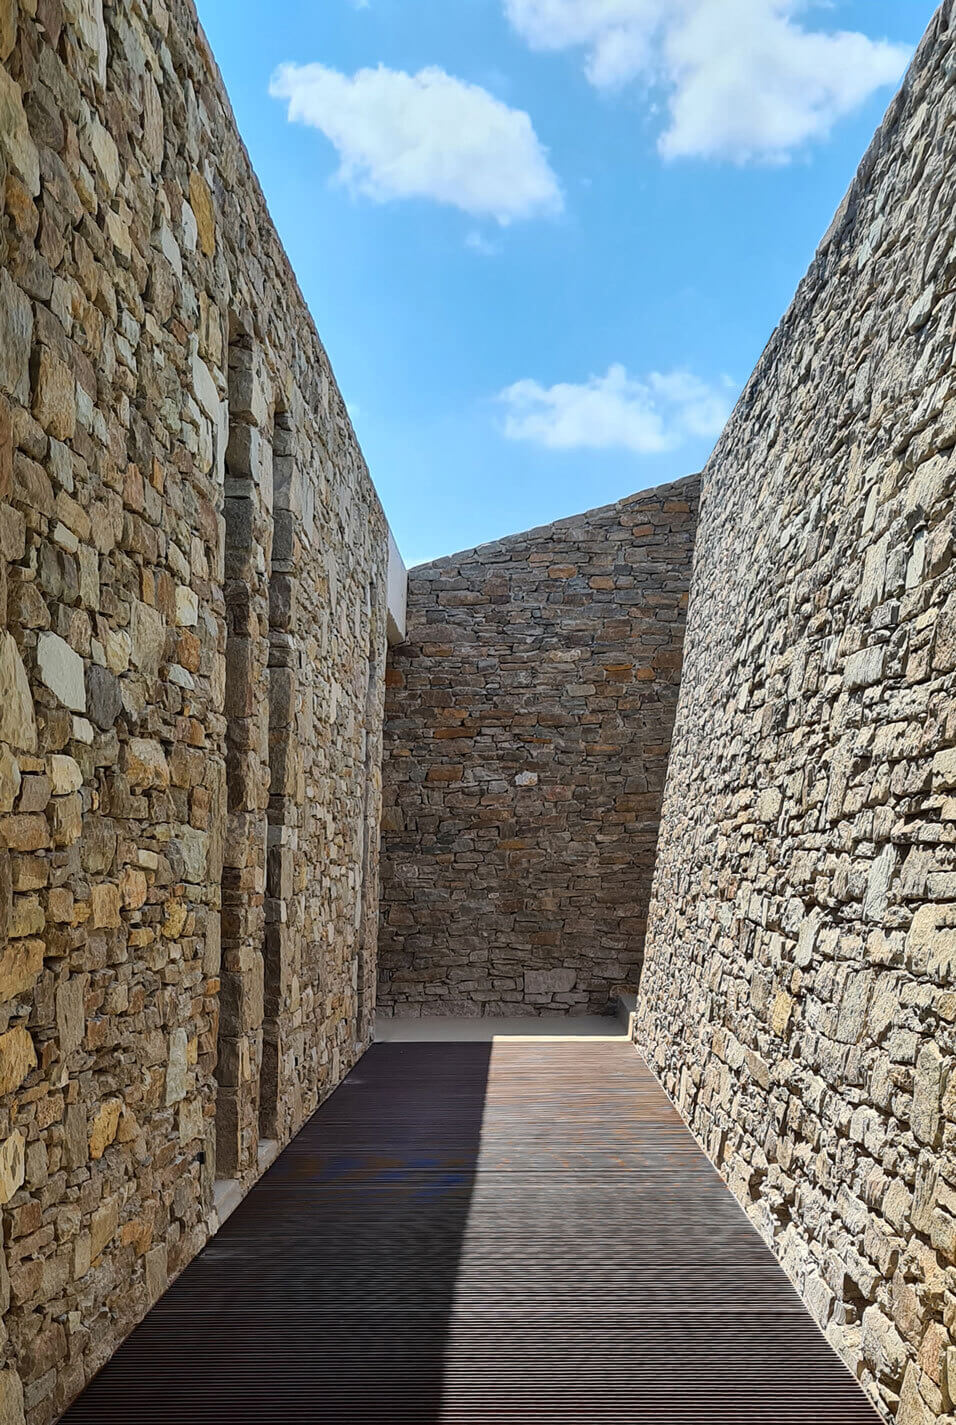 这条走道两侧是高大的土坯砖墙，给人一种质朴的感觉。